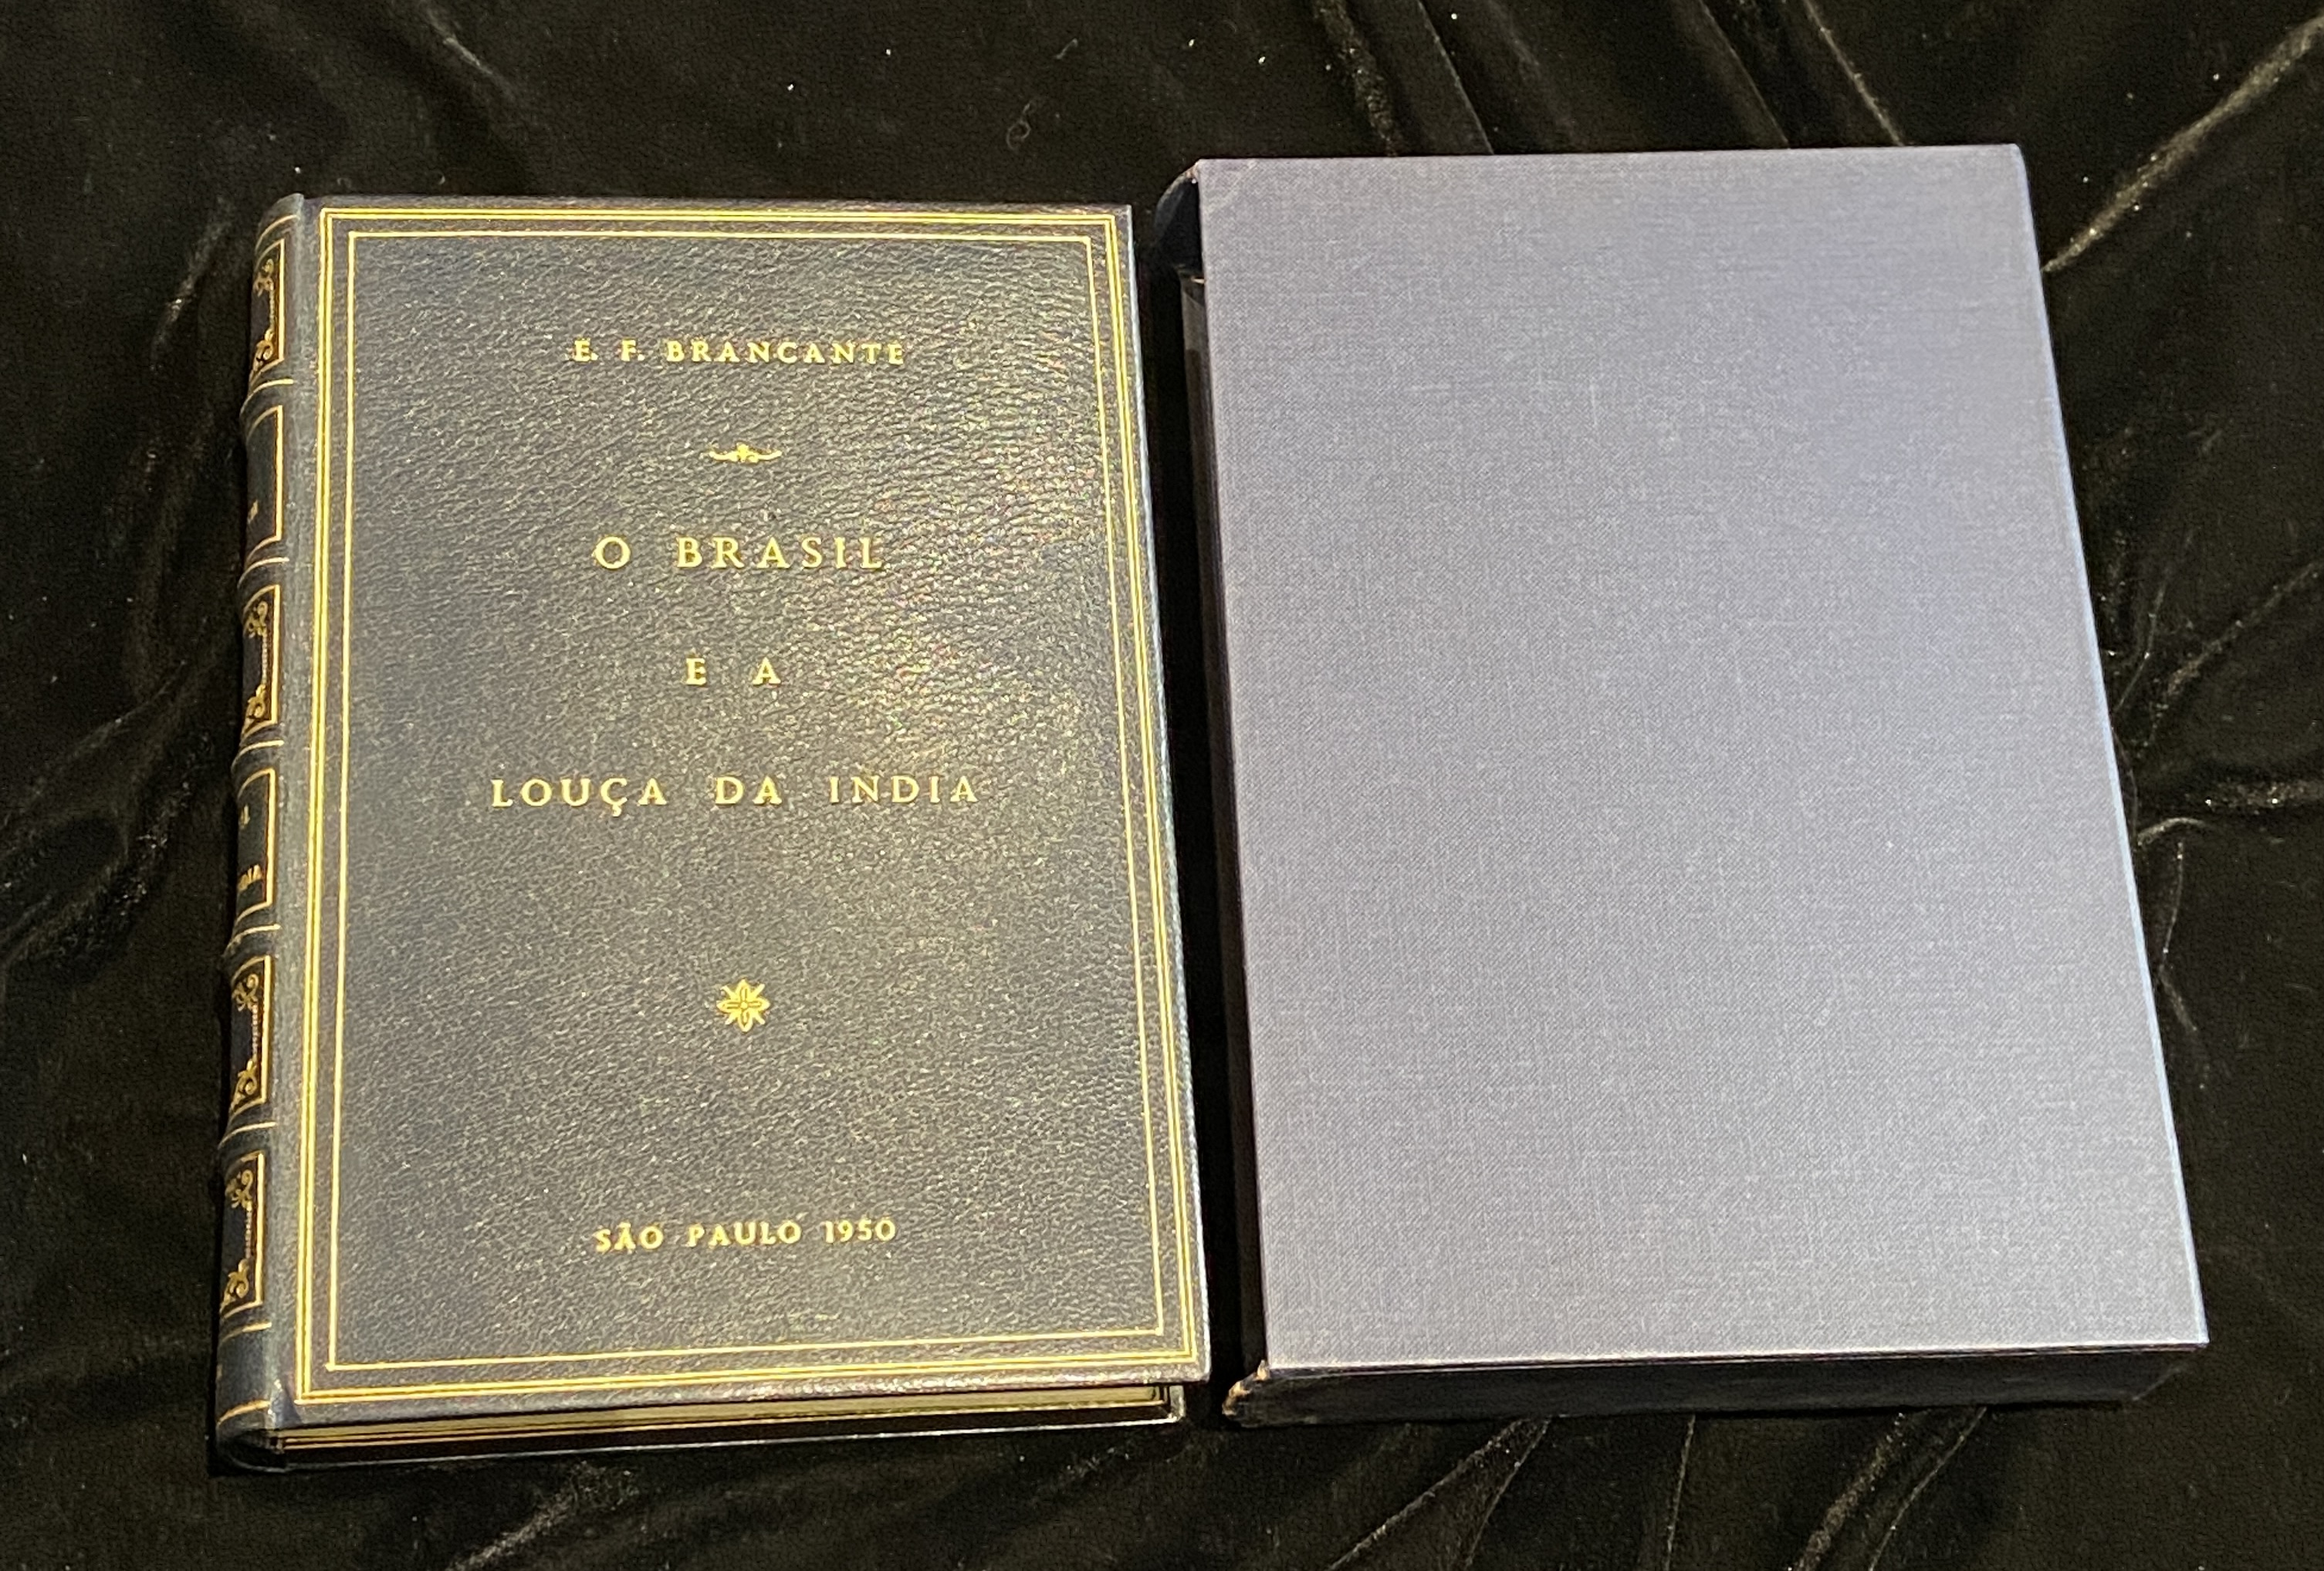 O BRASIL E A LOUÇA DE INDIA, ELDINO DA FONSECA BRANCANTE, SÃO PAOLO, 1950 - Image 2 of 10